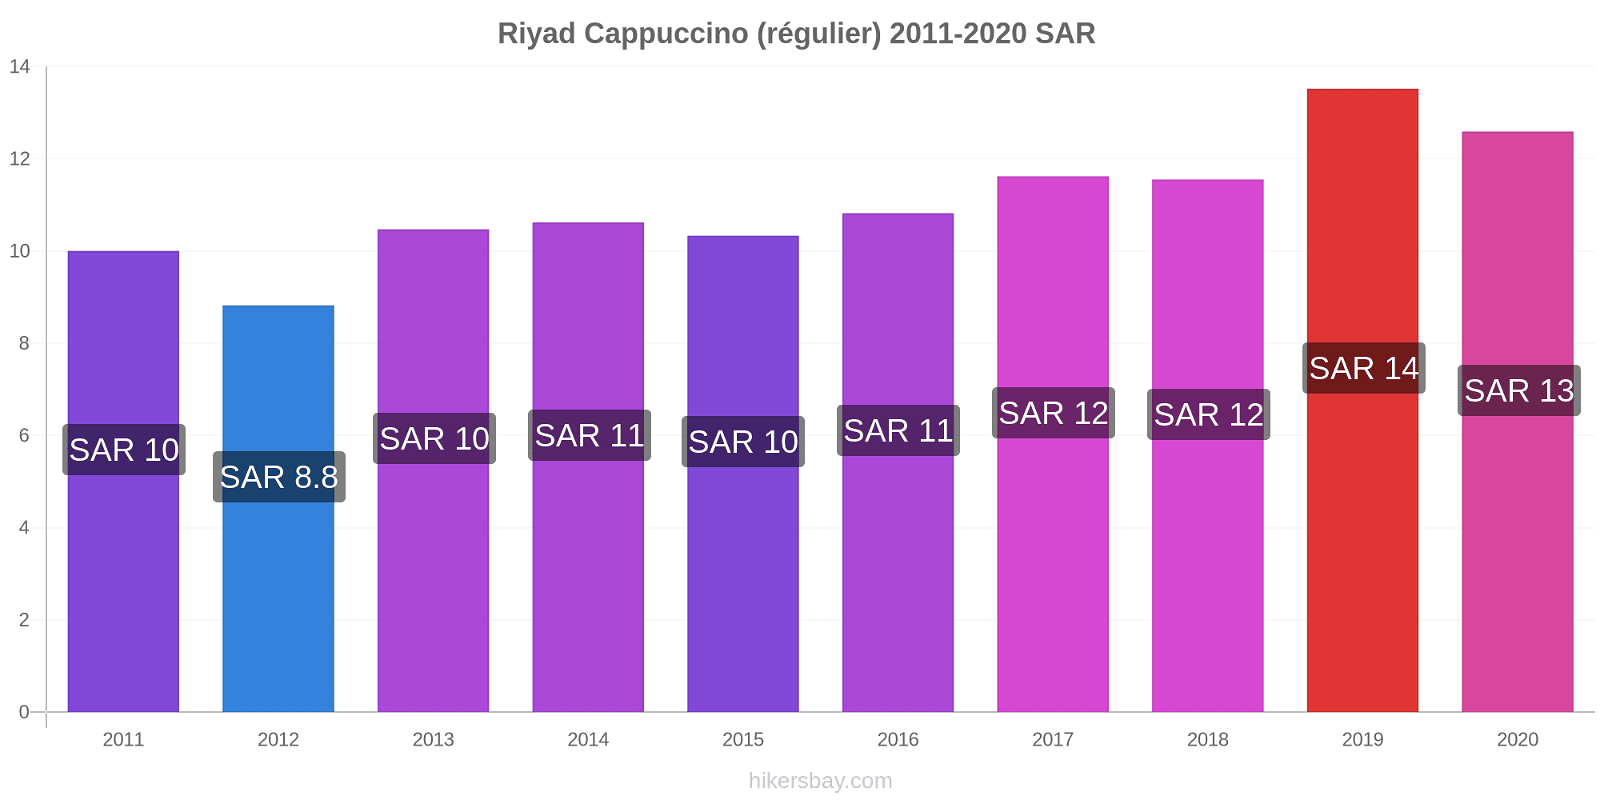 Riyad changements de prix Cappuccino (régulier) hikersbay.com